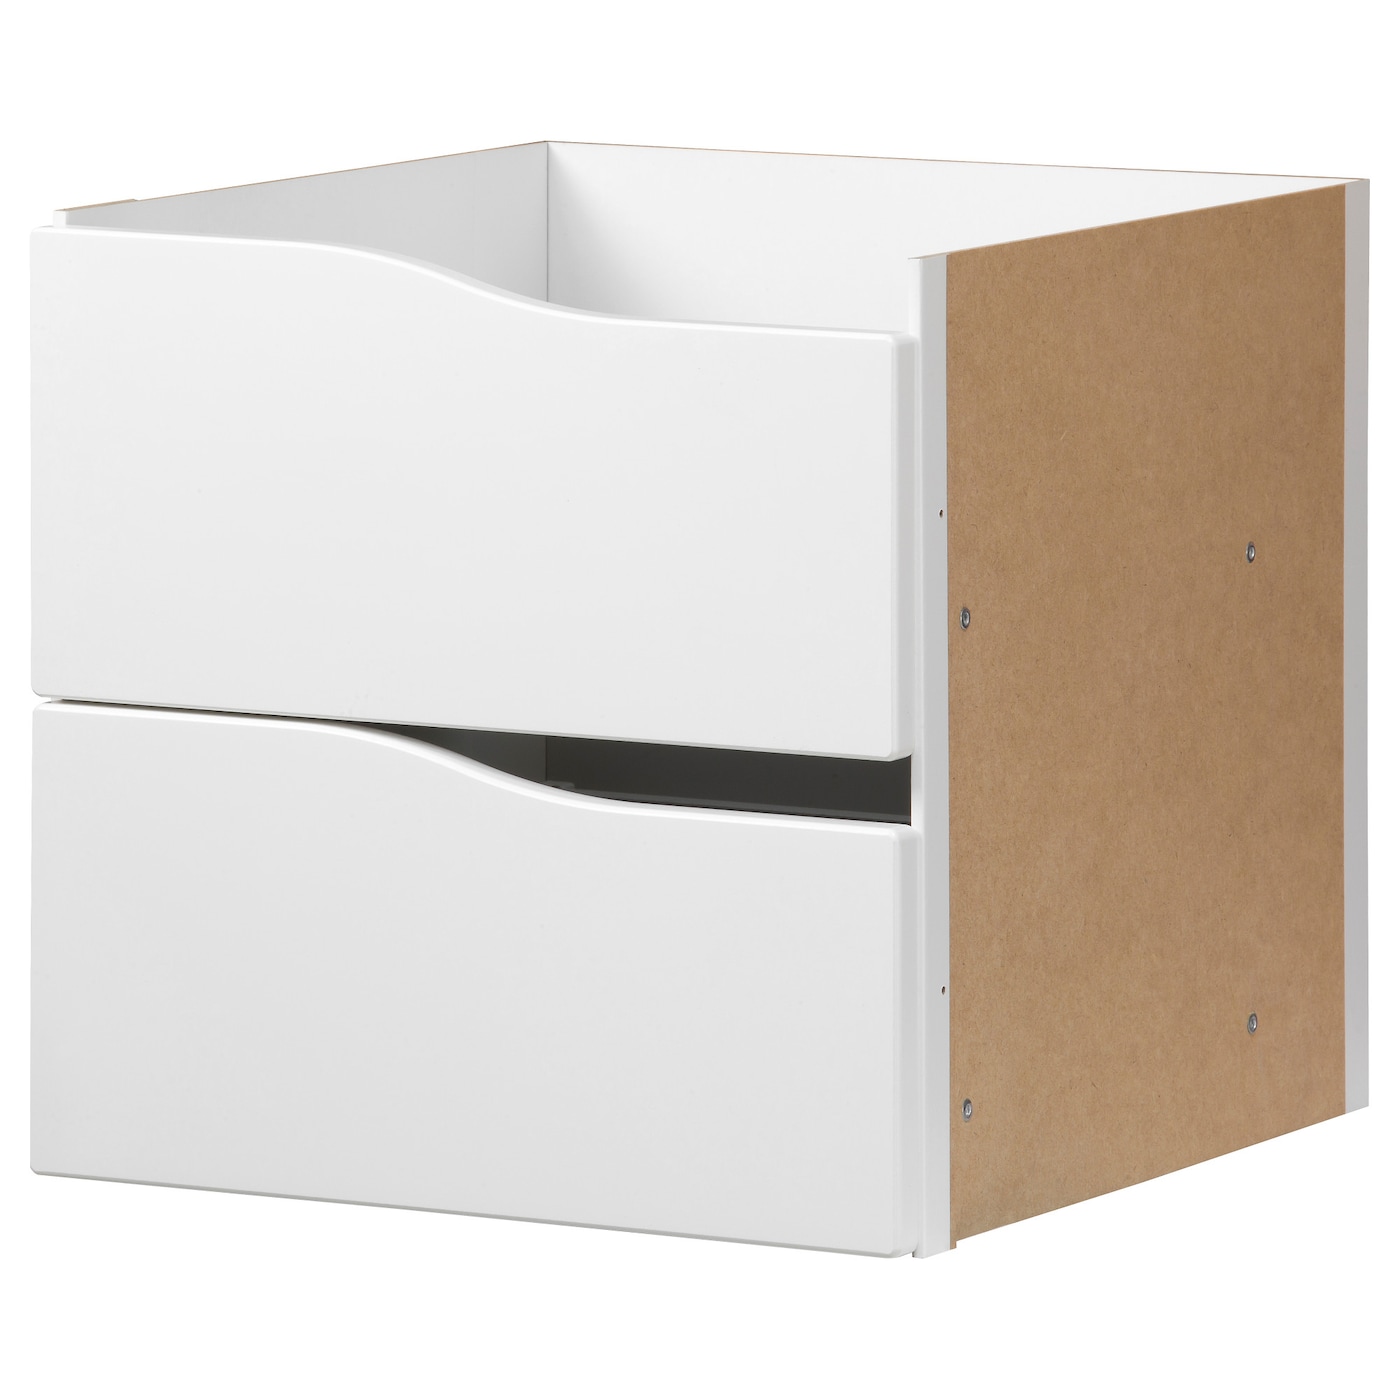 Вставка с 2 ящиками - KALLAX IKEA/КАЛЛАКС ИКЕА, 33х33 см, бежевый/белый